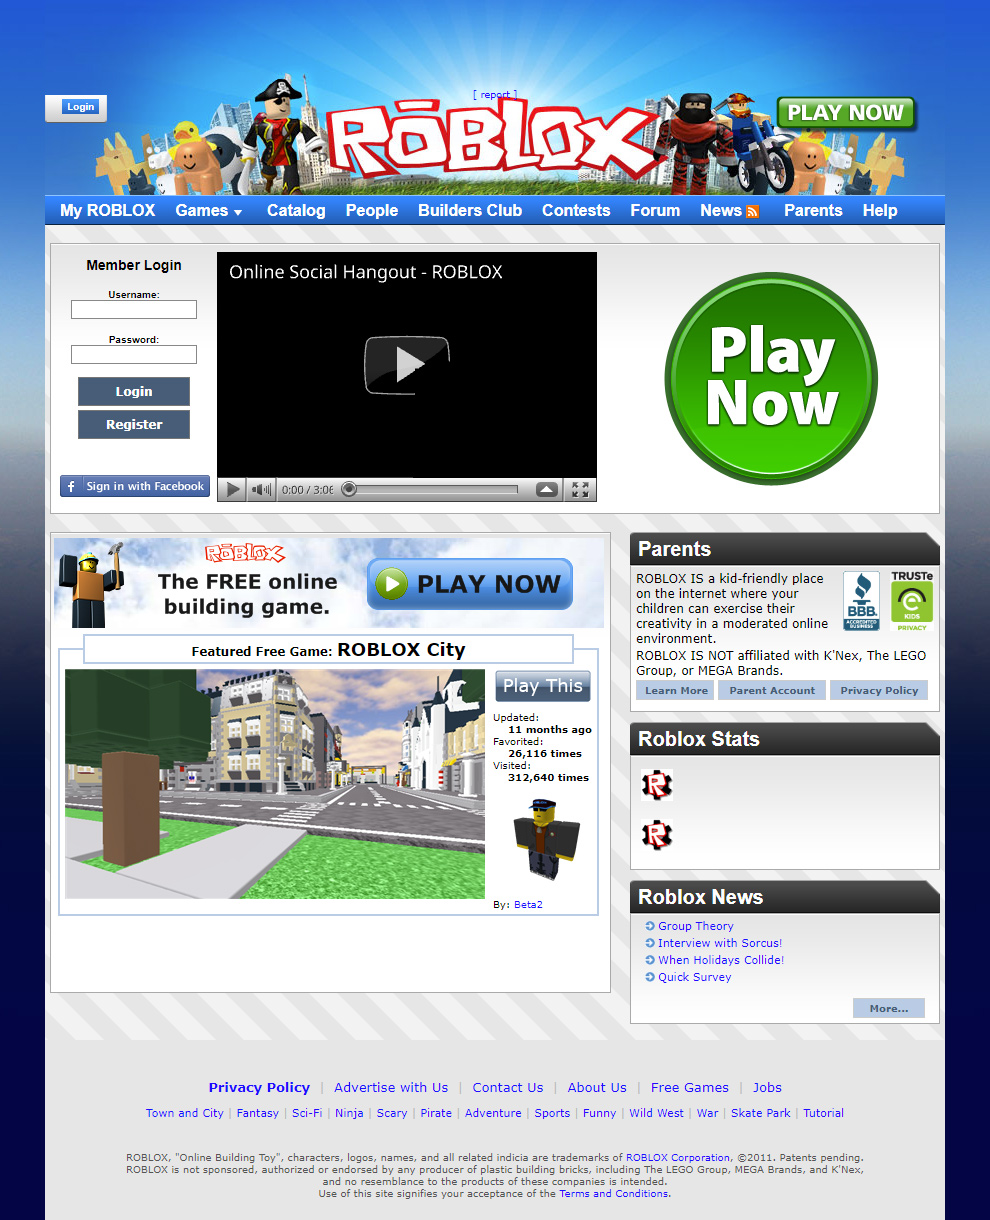 Roblox website in 2011